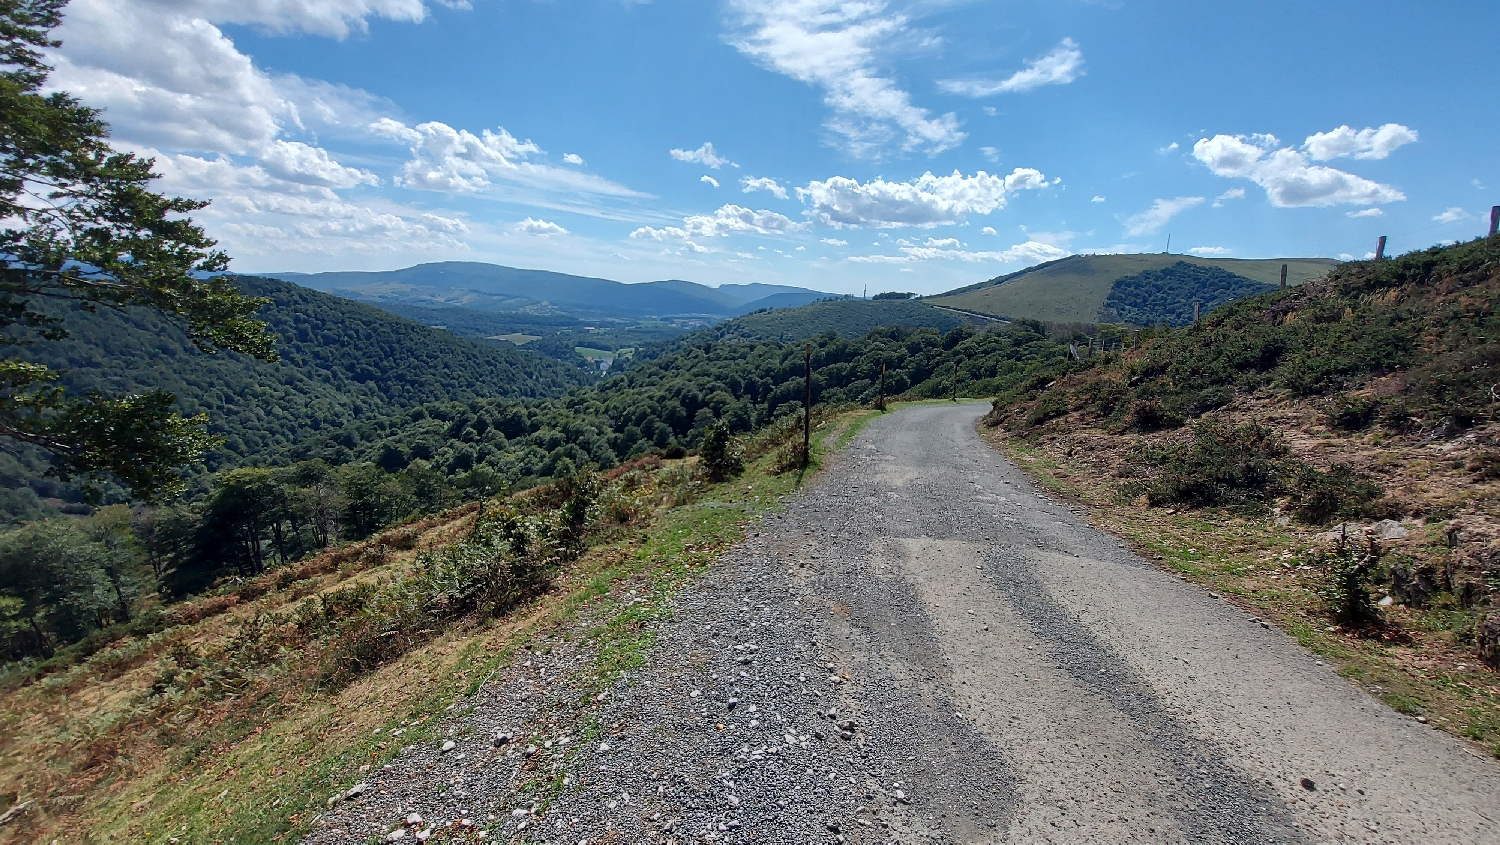 El Camino, Francia út, a lankásabb út, amely végre lefelé vezet már Roncesvalles irányába